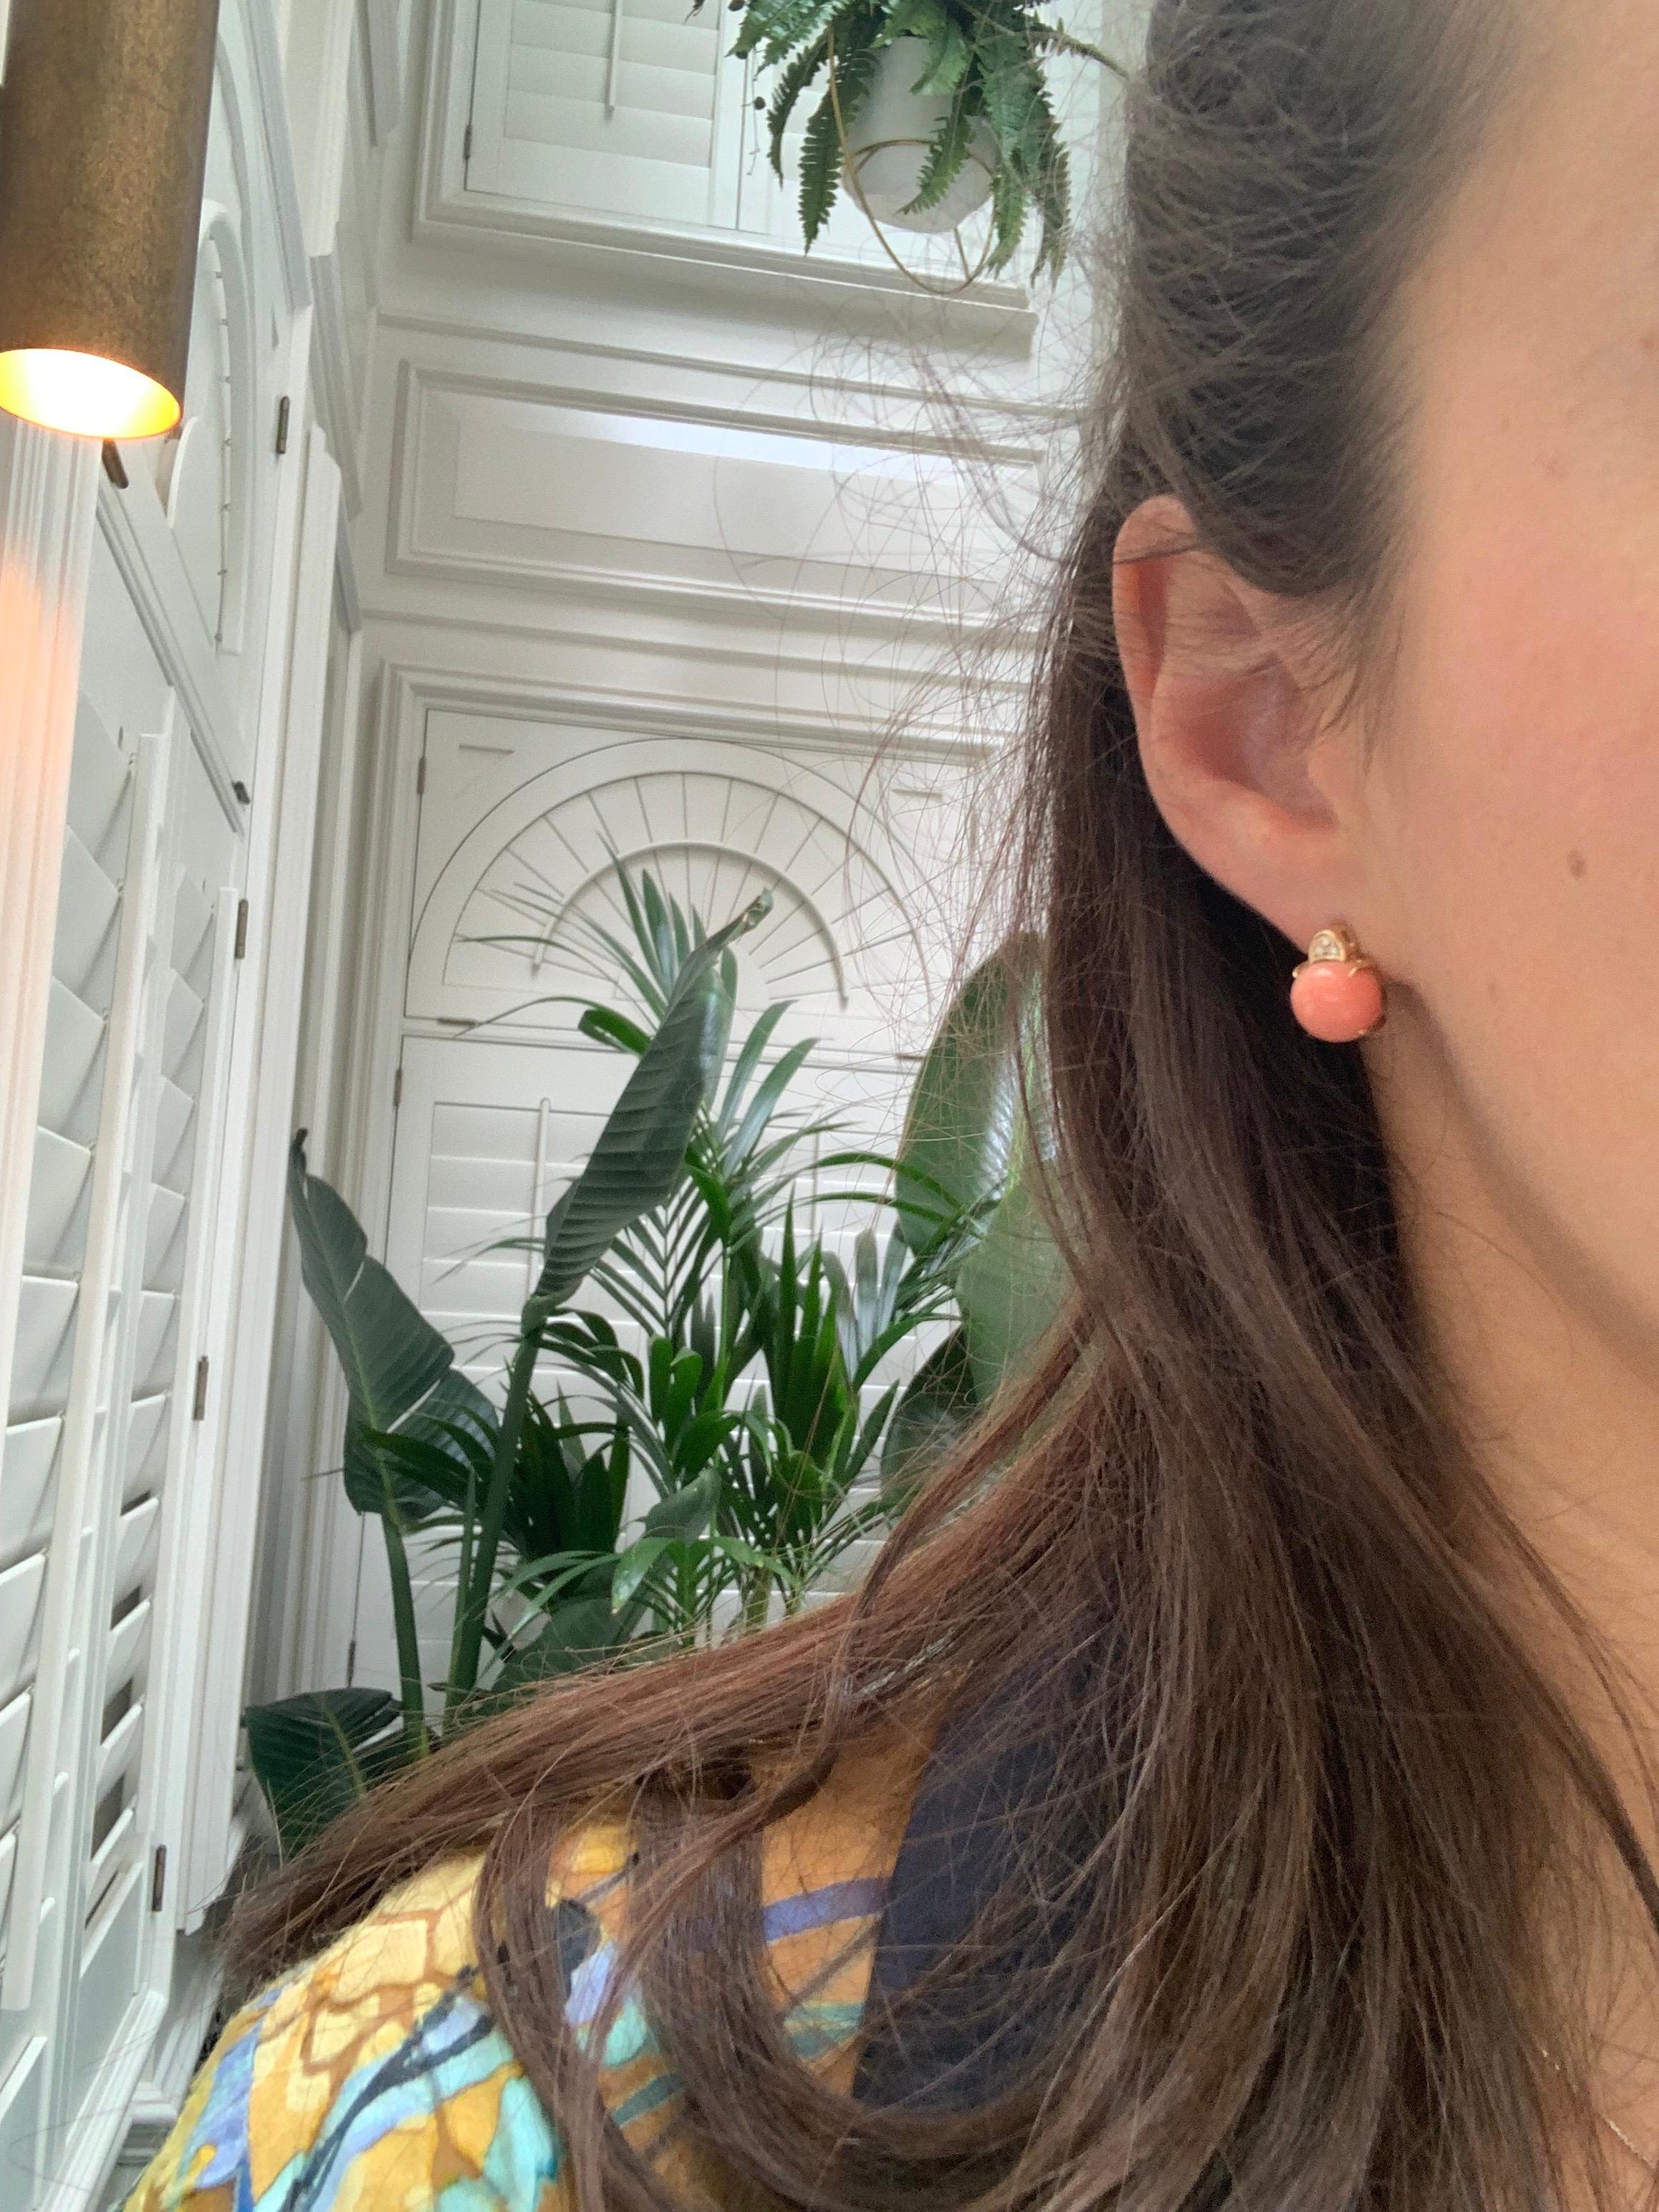 pink coral stud earrings